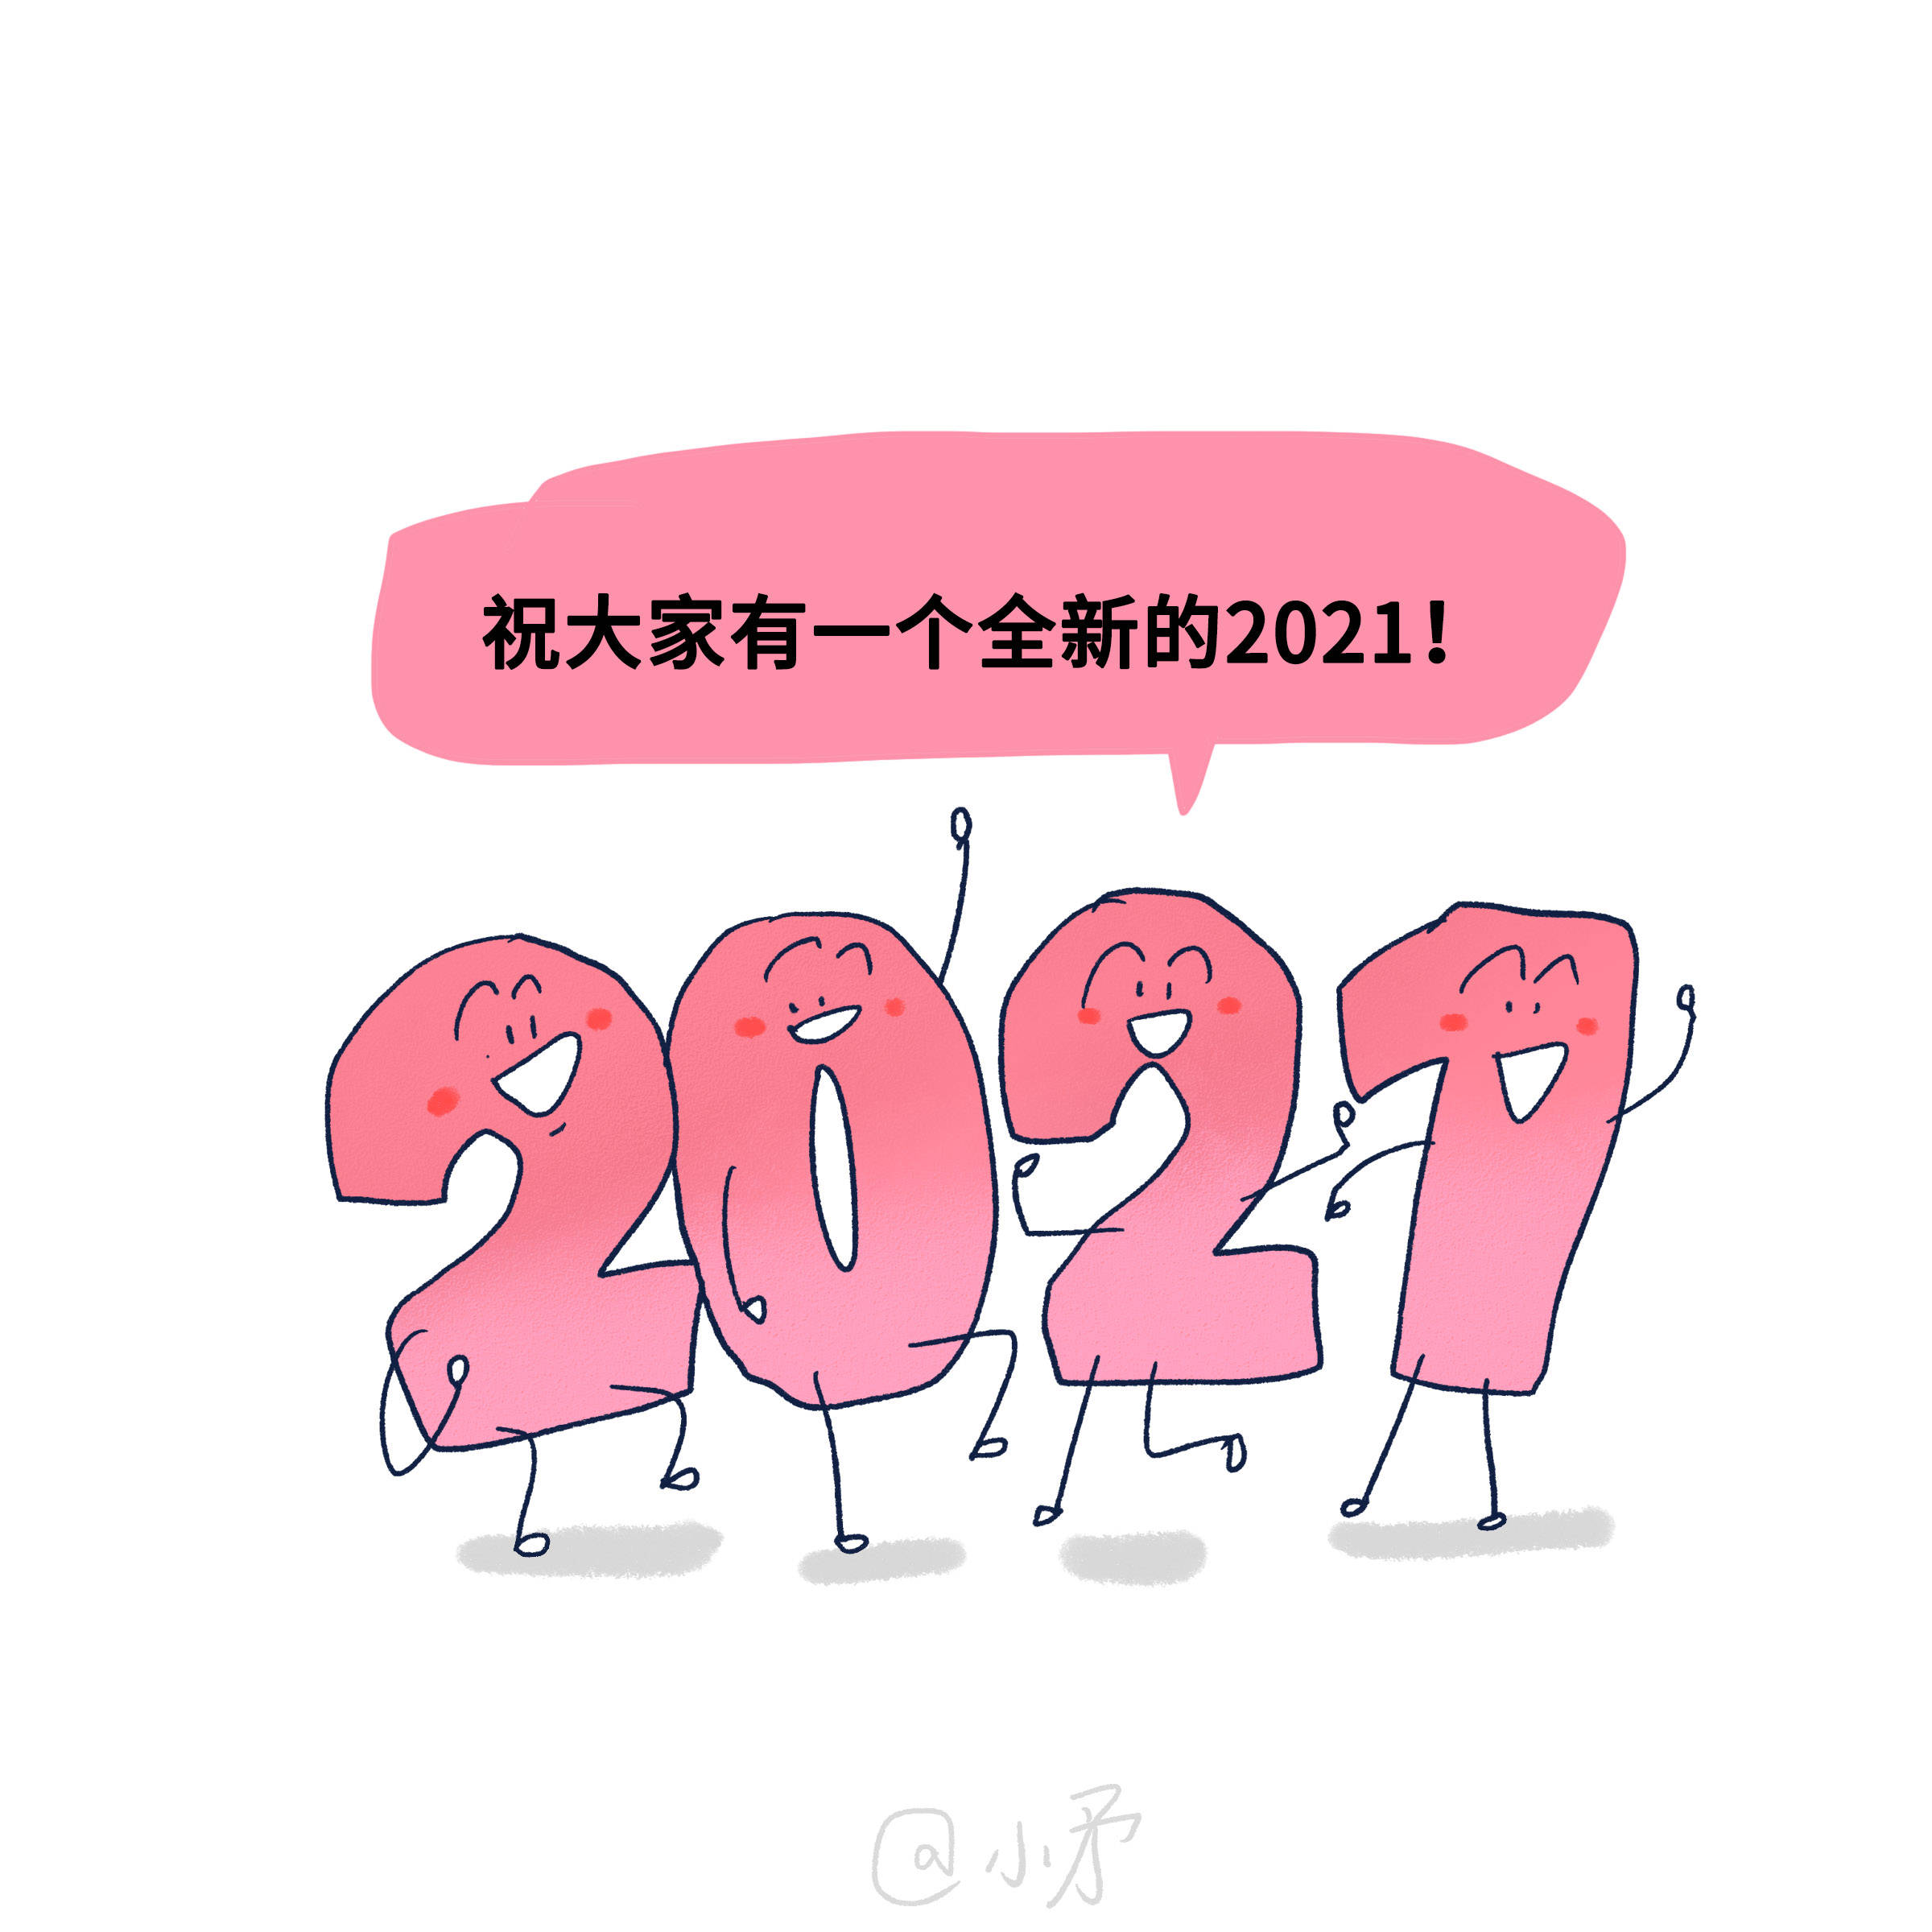 祝愿大家都有一个全新的2021